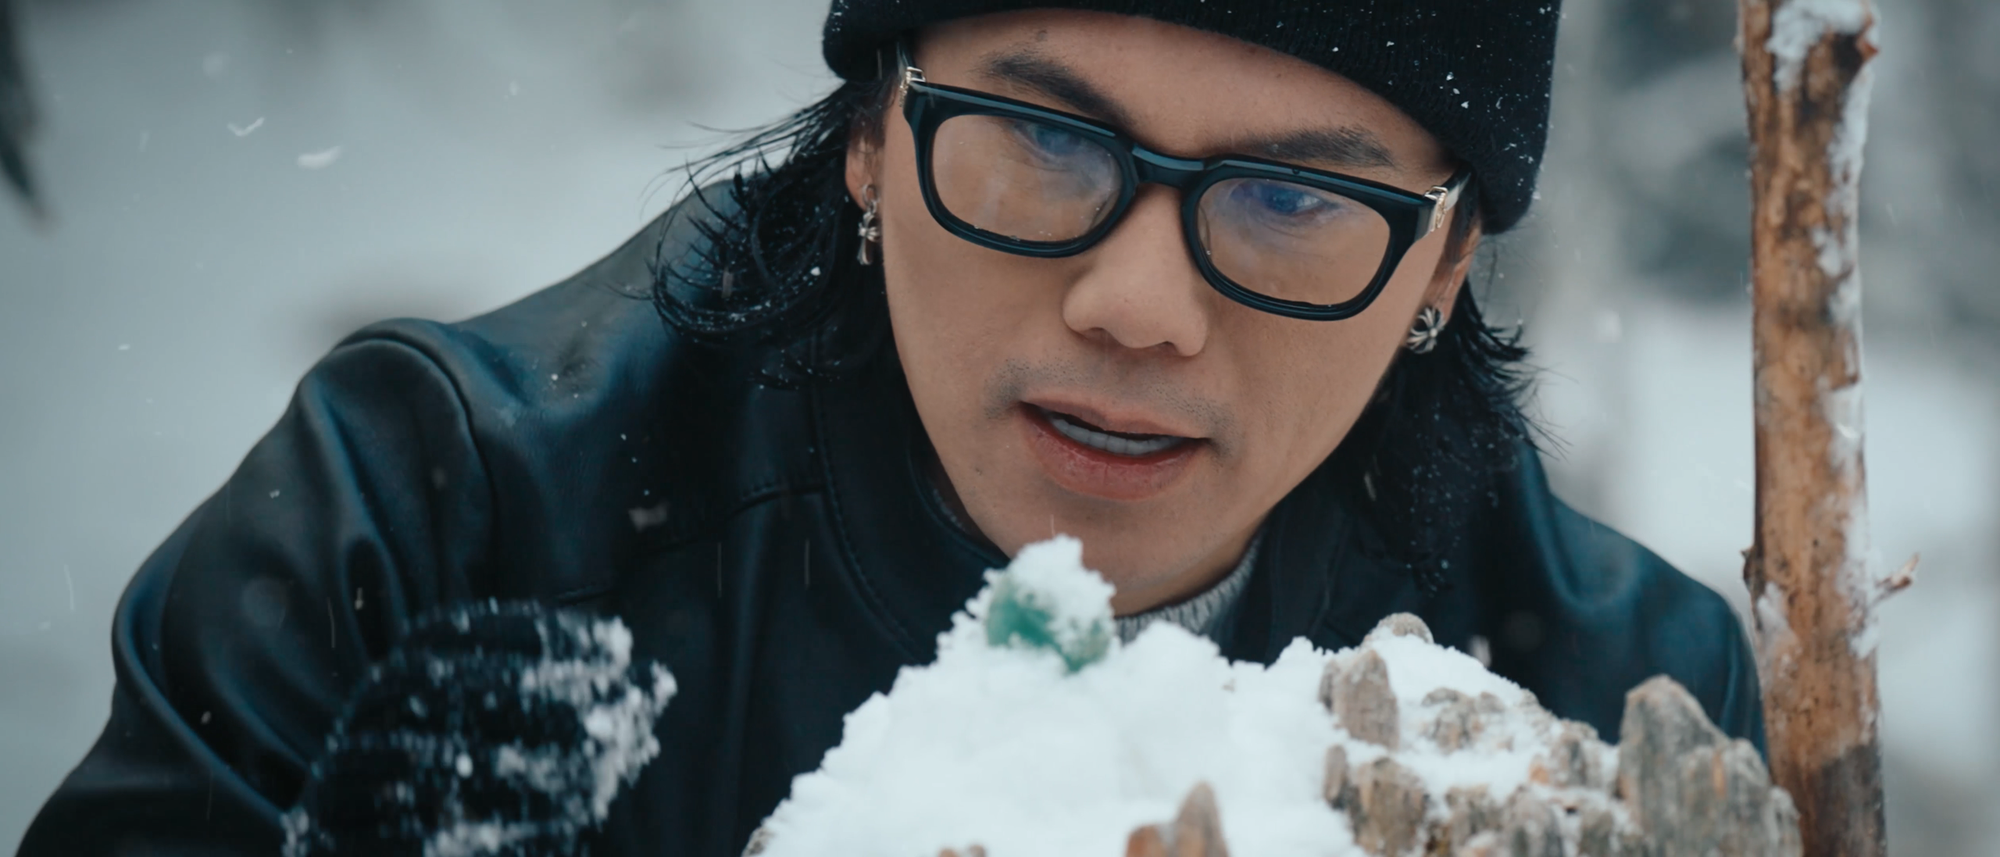 Mars Anh Tú sang Trung Quốc săn tuyết để quay MV mới, suýt bị bỏng lạnh- Ảnh 7.